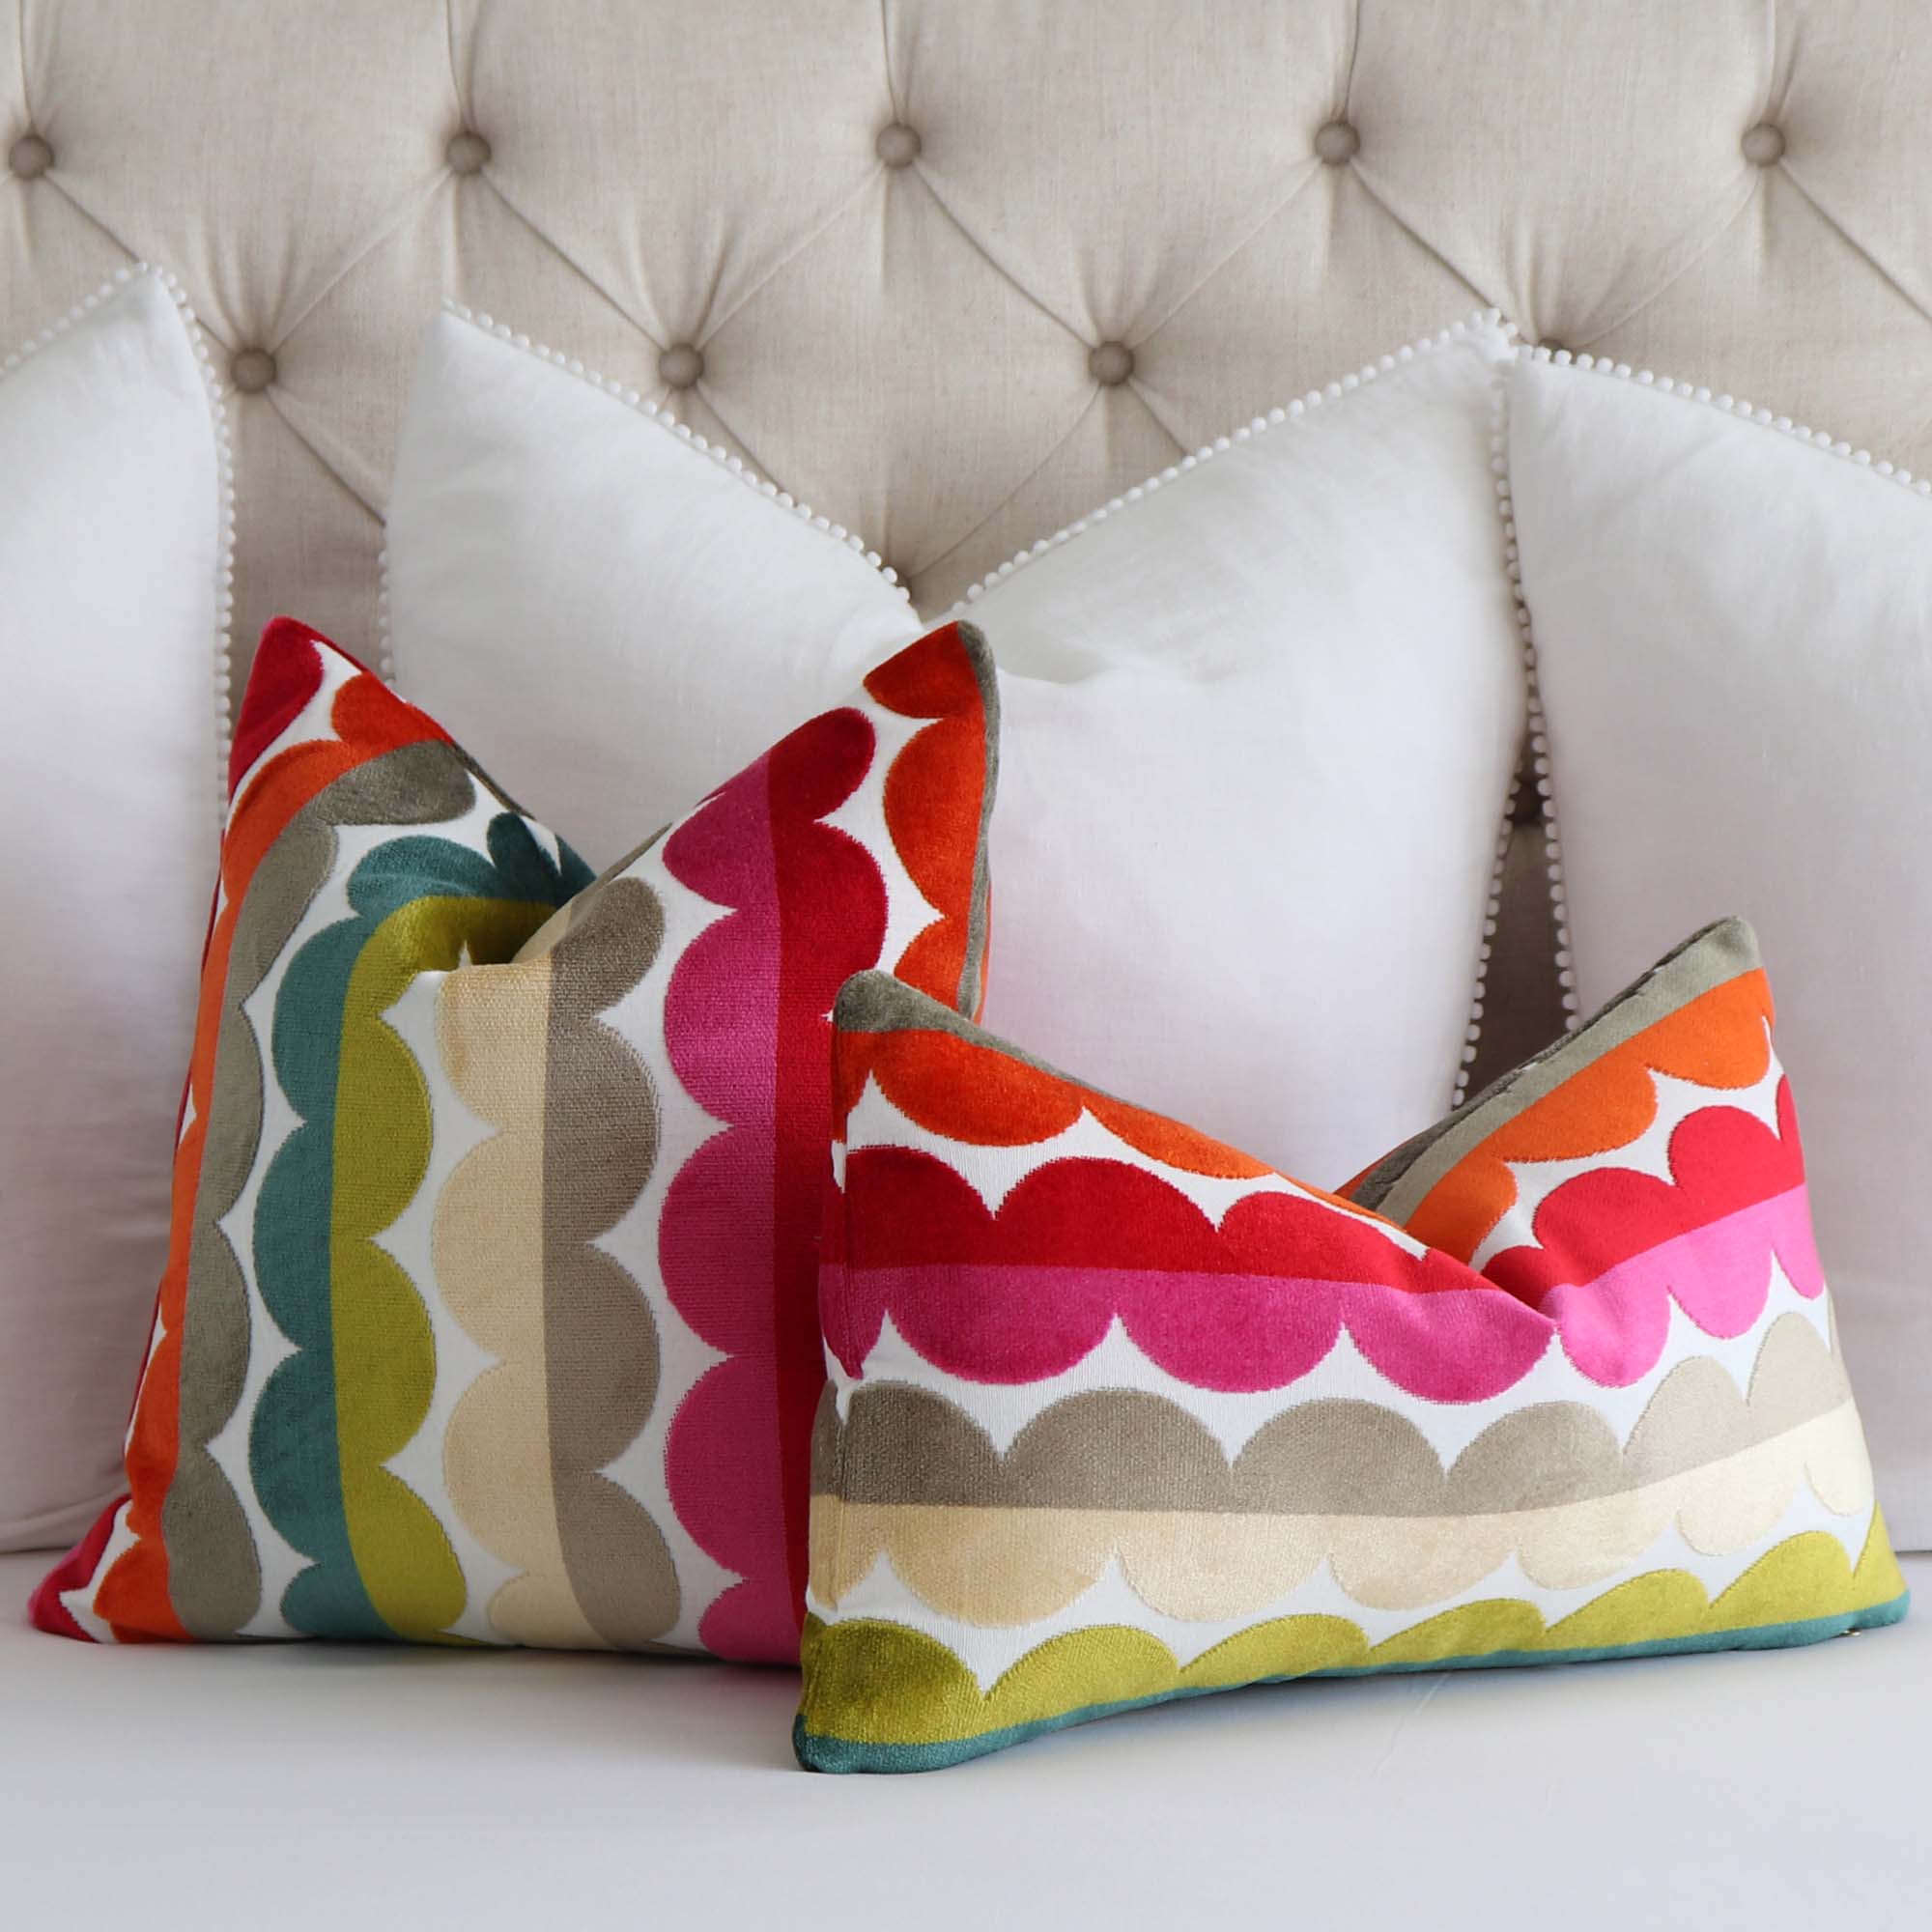 Kravet Jonathan Adler Curvy Velvet Stripes Designer Luxury Decorative Throw  Pillow Cover with Big White Euro Shams